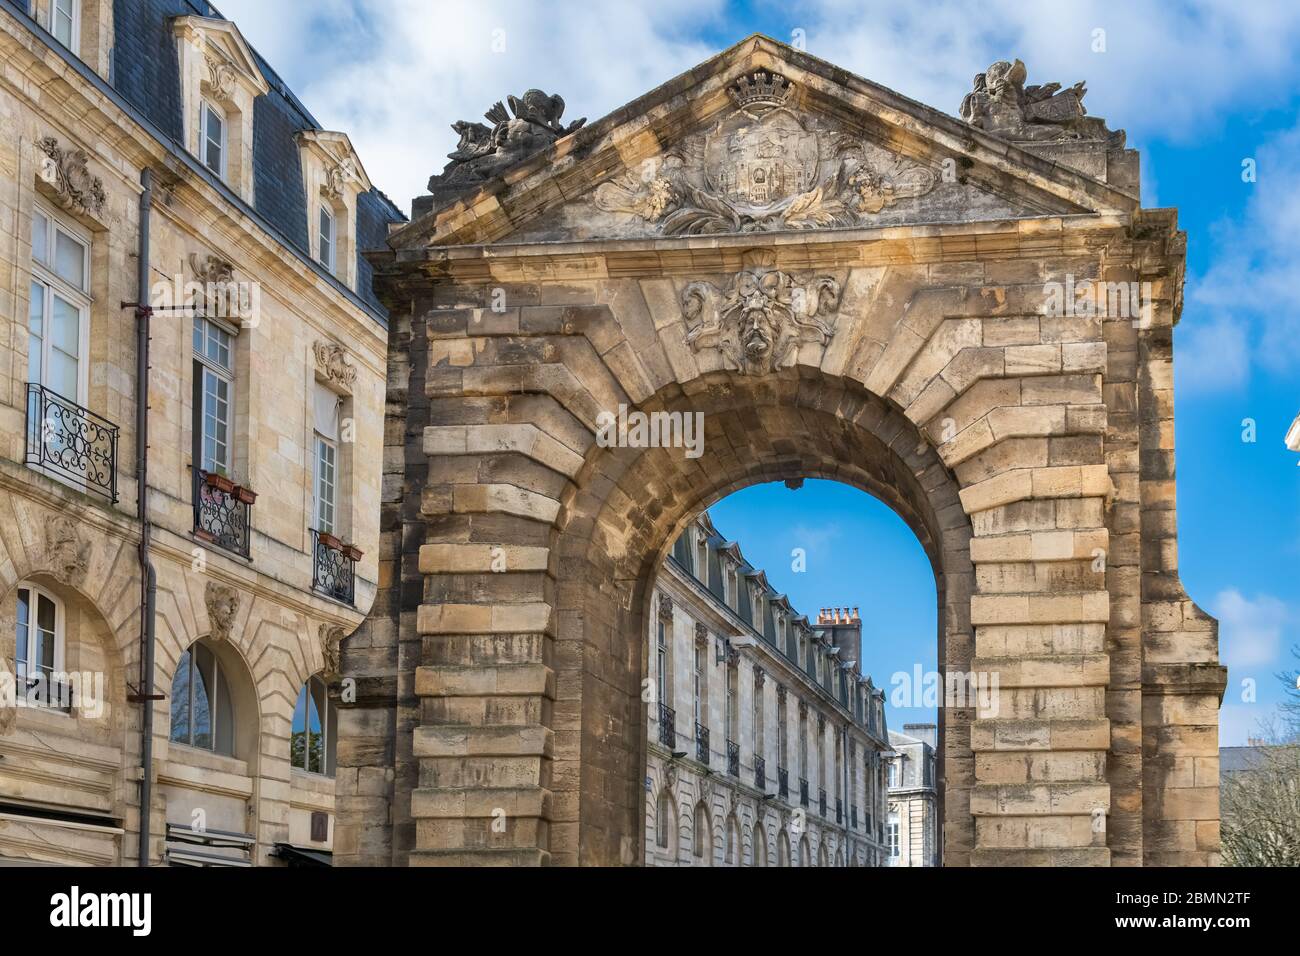 Bordeaux, the beautiful Dijeaux gate, ancient monument Stock Photo